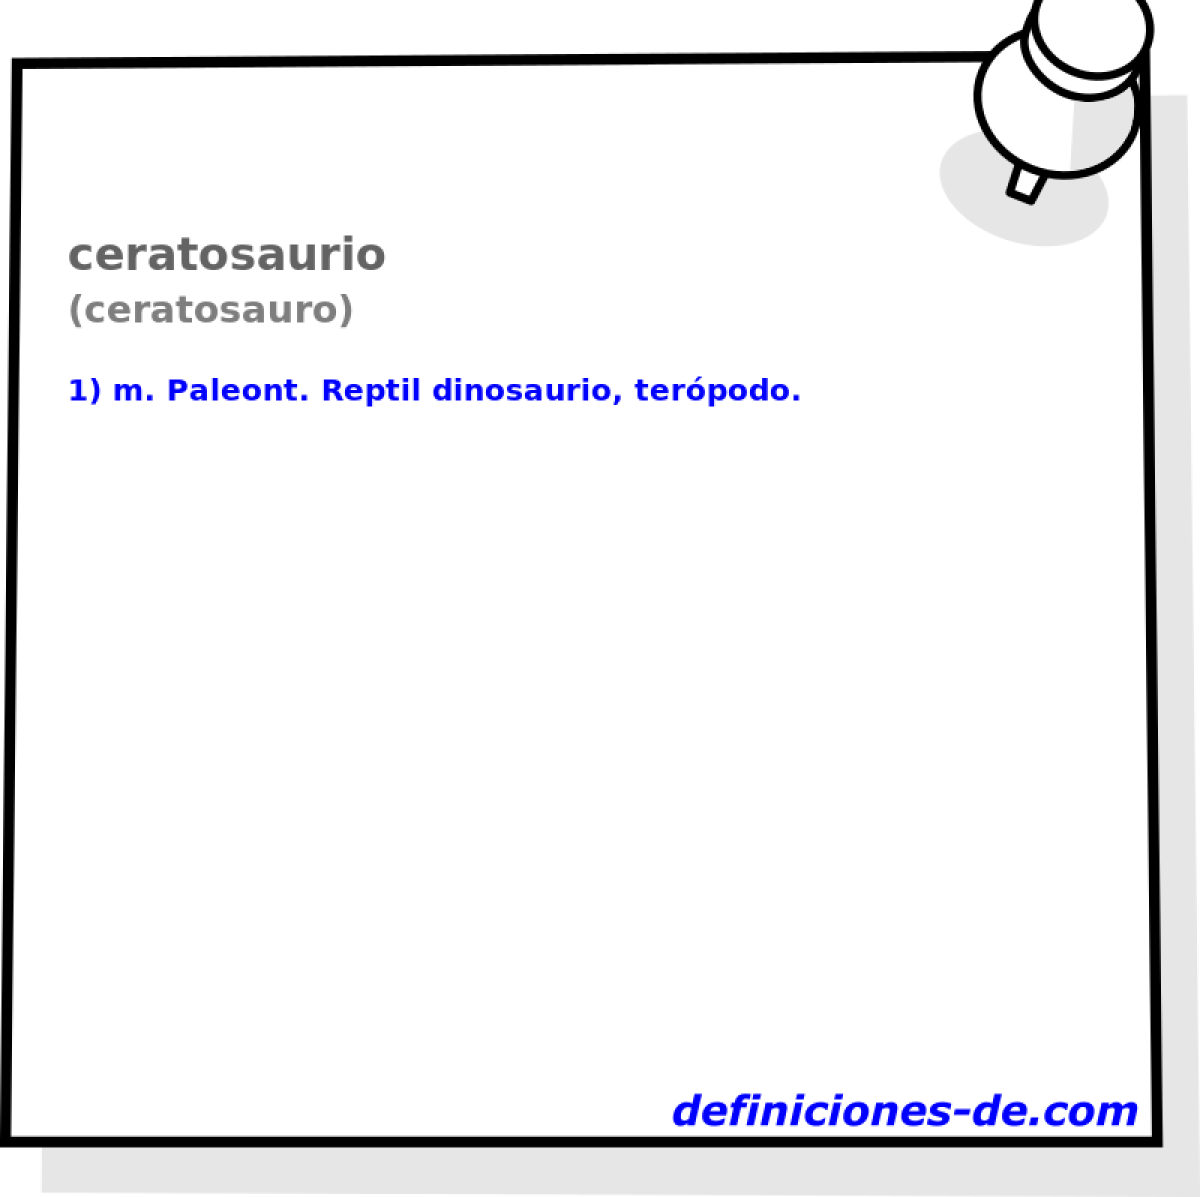 ceratosaurio (ceratosauro)